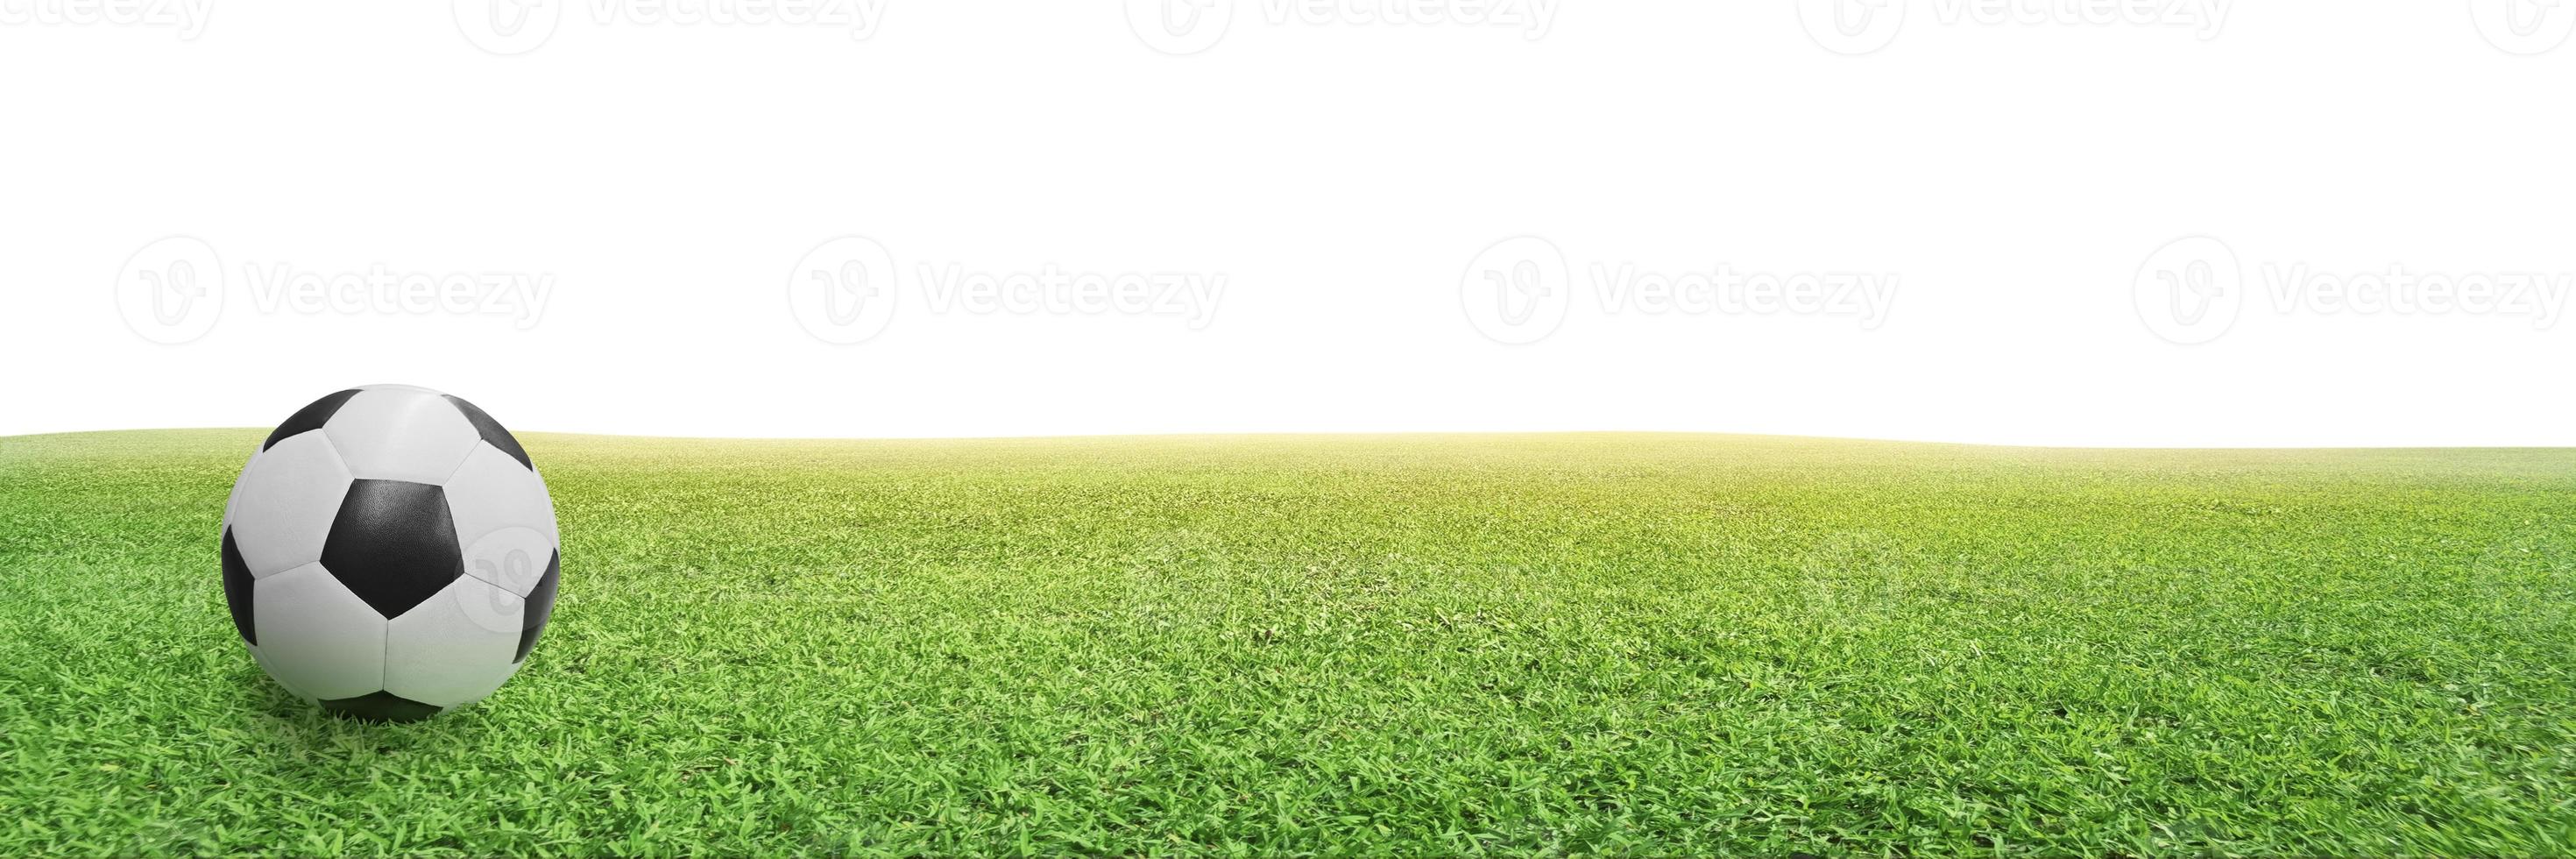 Traditioneller Fußball im grünen Rasen foto